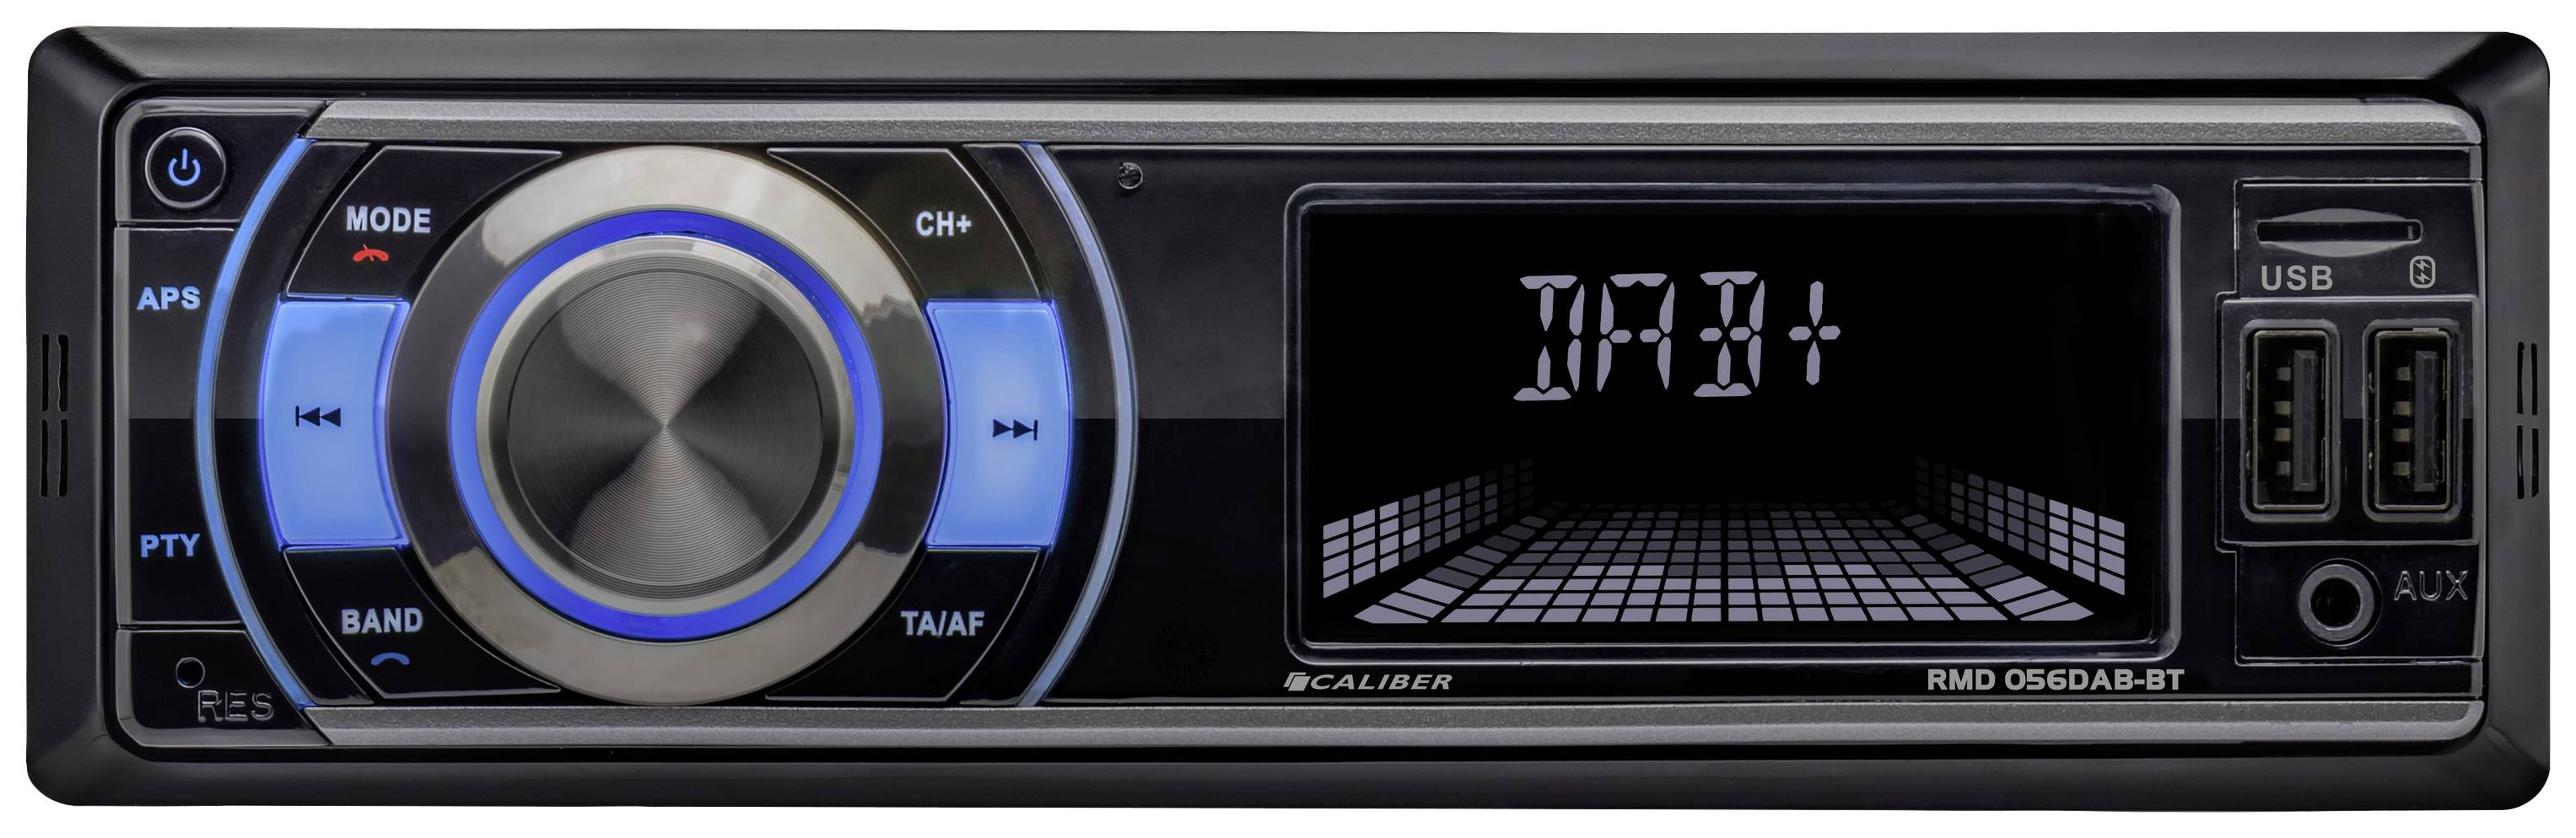 Autoradio mit Bluetooth und Flip Screen - 1 DIN - DAB+ und FM  (RMD579DAB-BT)